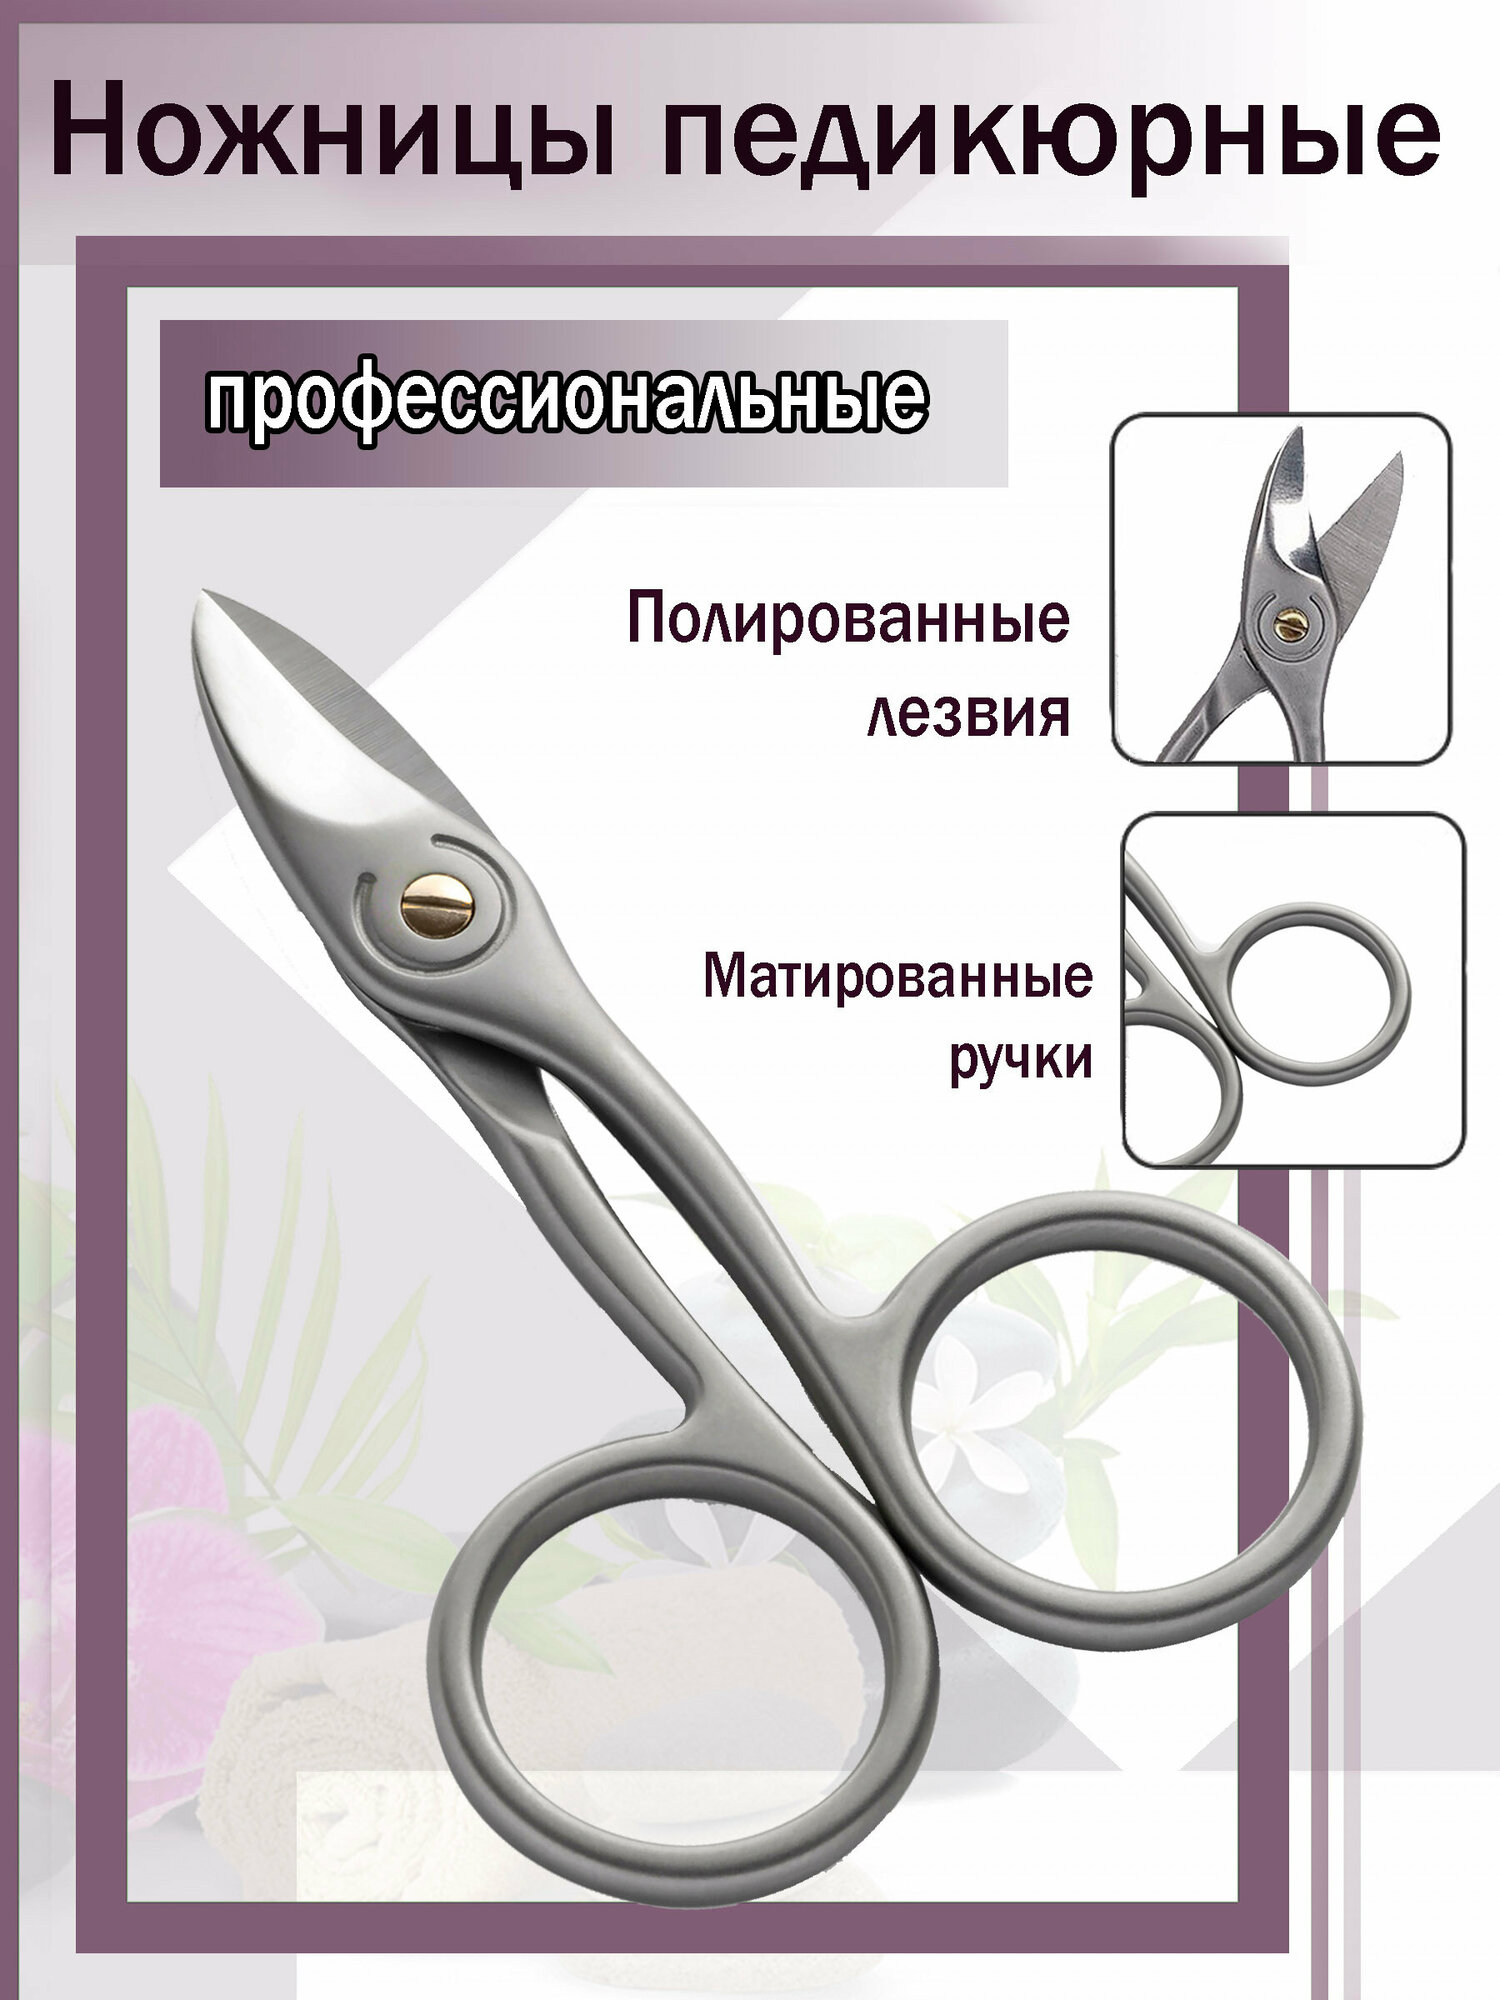 Ножницы для педикюра и маникюра для твердых, вросших и сложных ногтей